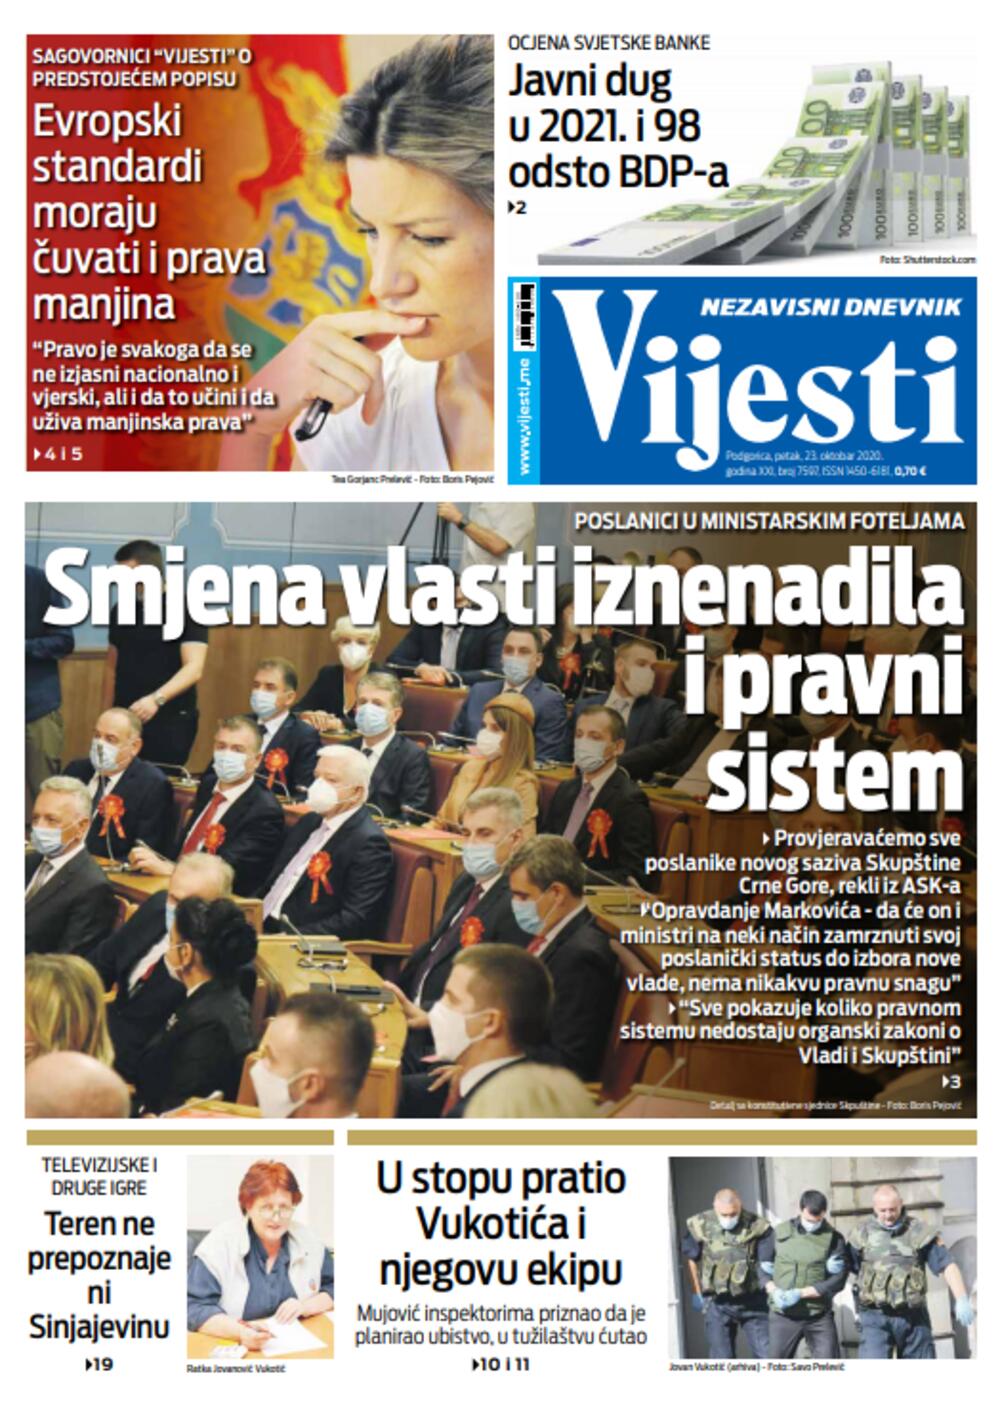 Naslovna strana "Vijesti" za 23. oktobar, Foto: Vijesti